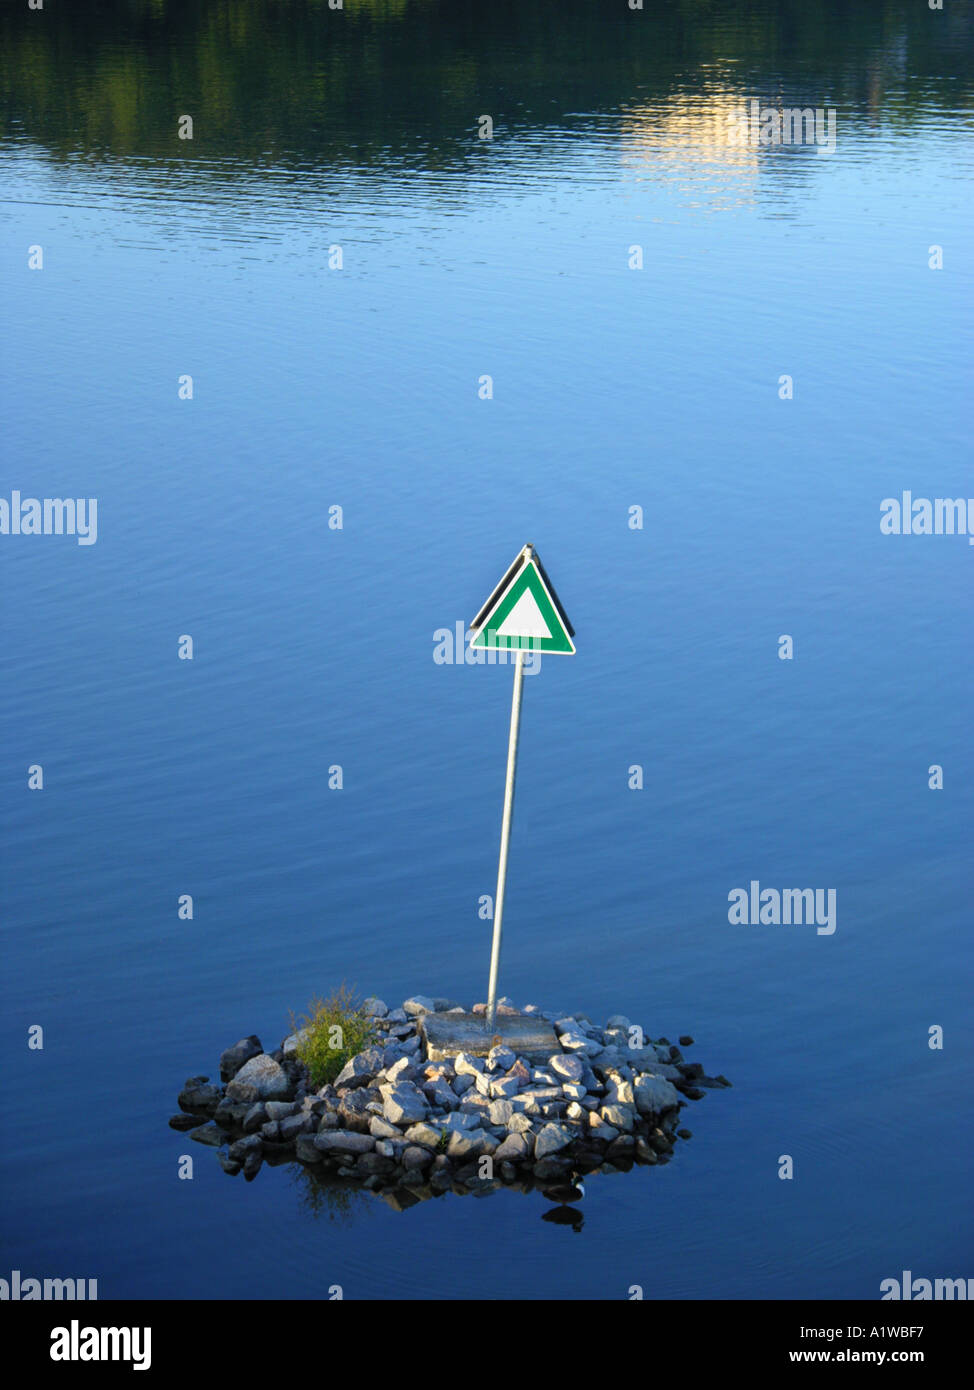 Schiffsverkehr anmelden Wasser SYMBOL Insel allein wenig kleine Stein Insel Wasser Fluss Einsamkeit einsam kein Körper Leben Stockfoto